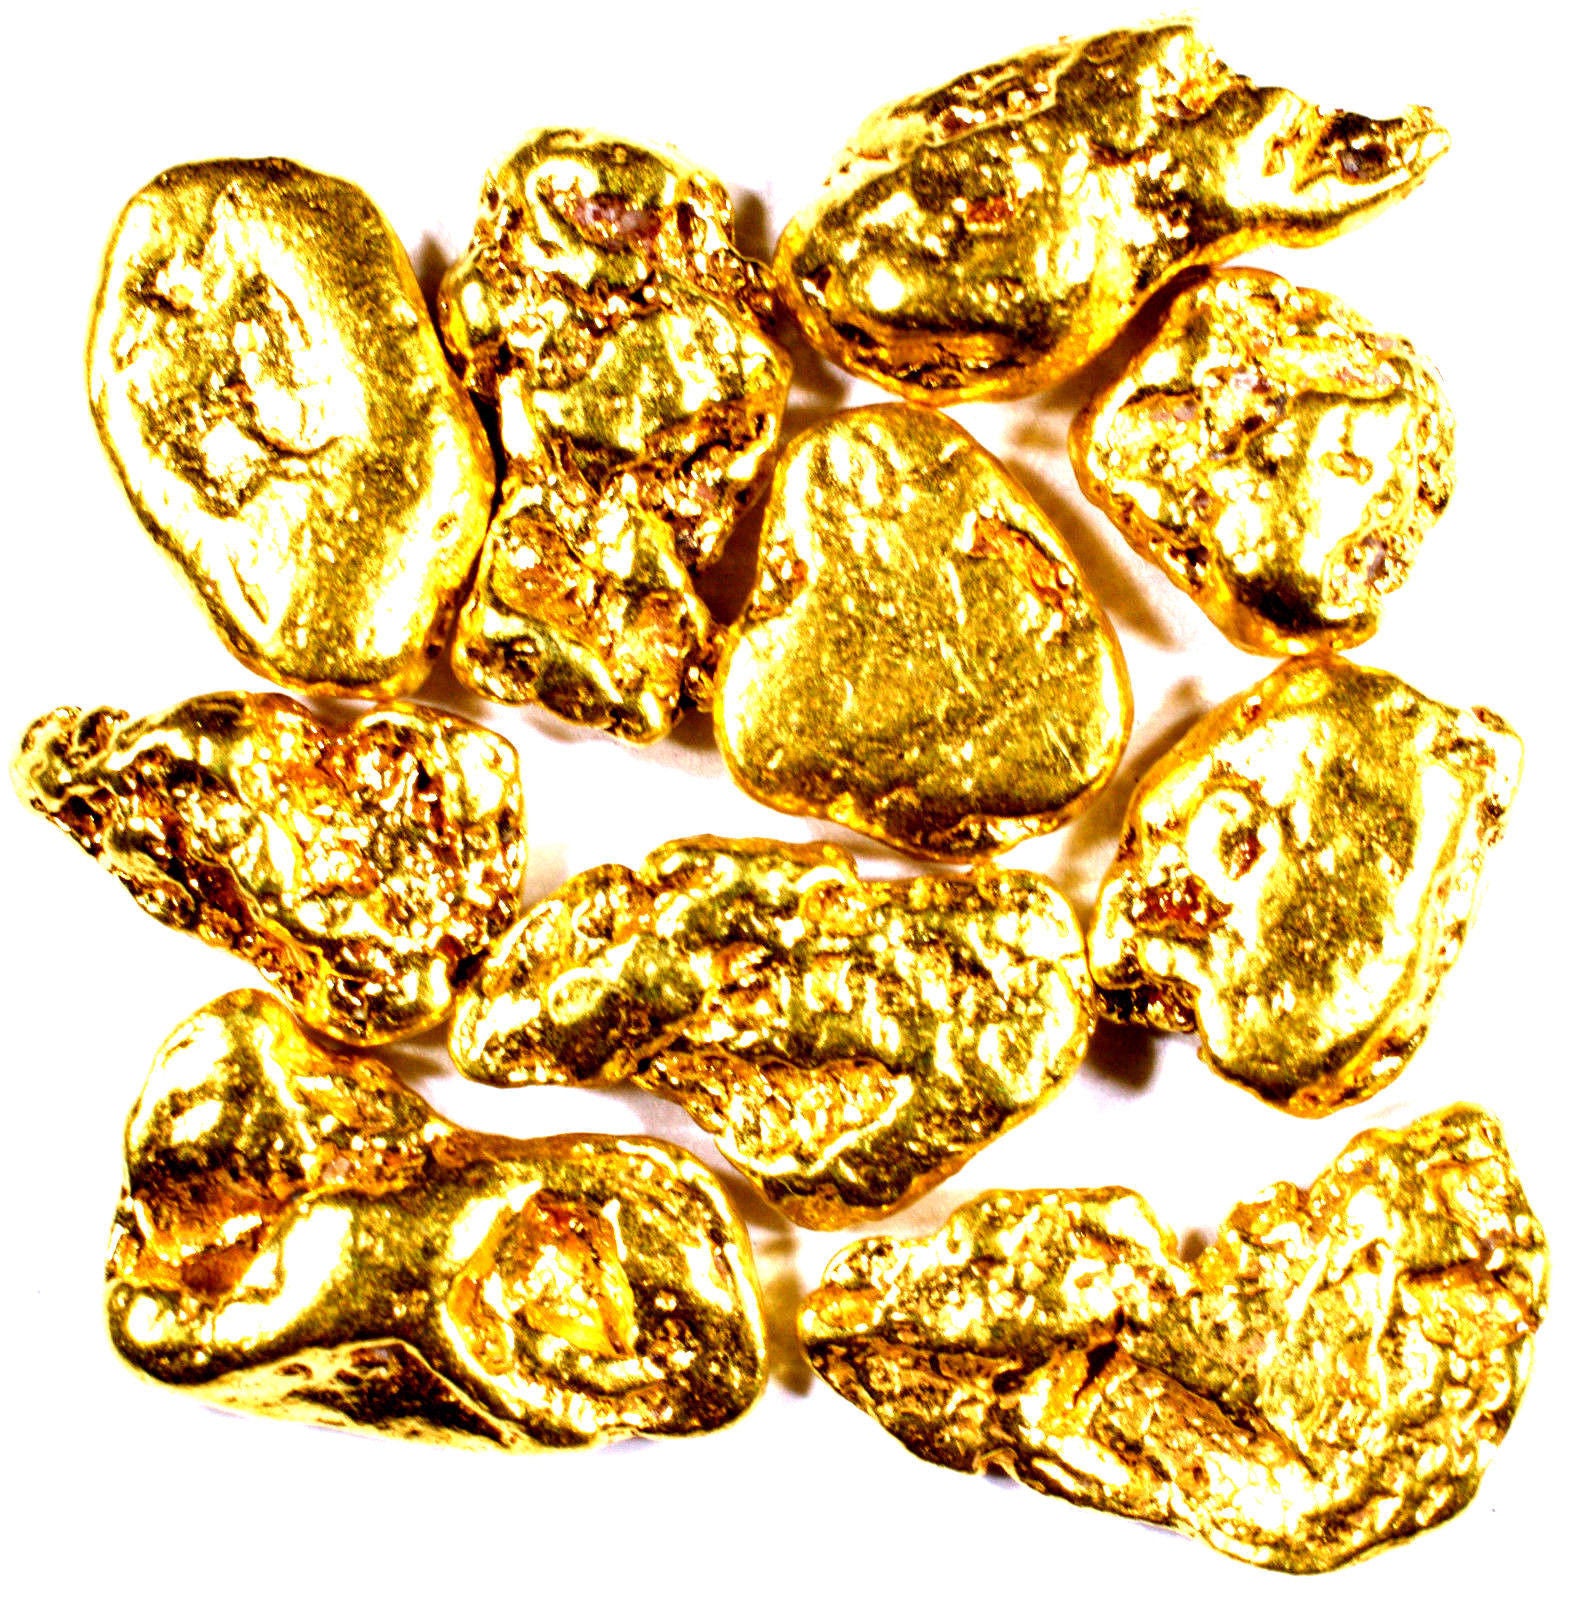 1 TROY OZ .999 SILVER 1901 $10 BISON BAR BU + 10 PIECE ALASKAN PURE GOLD NUGGETS - Liquidbullion